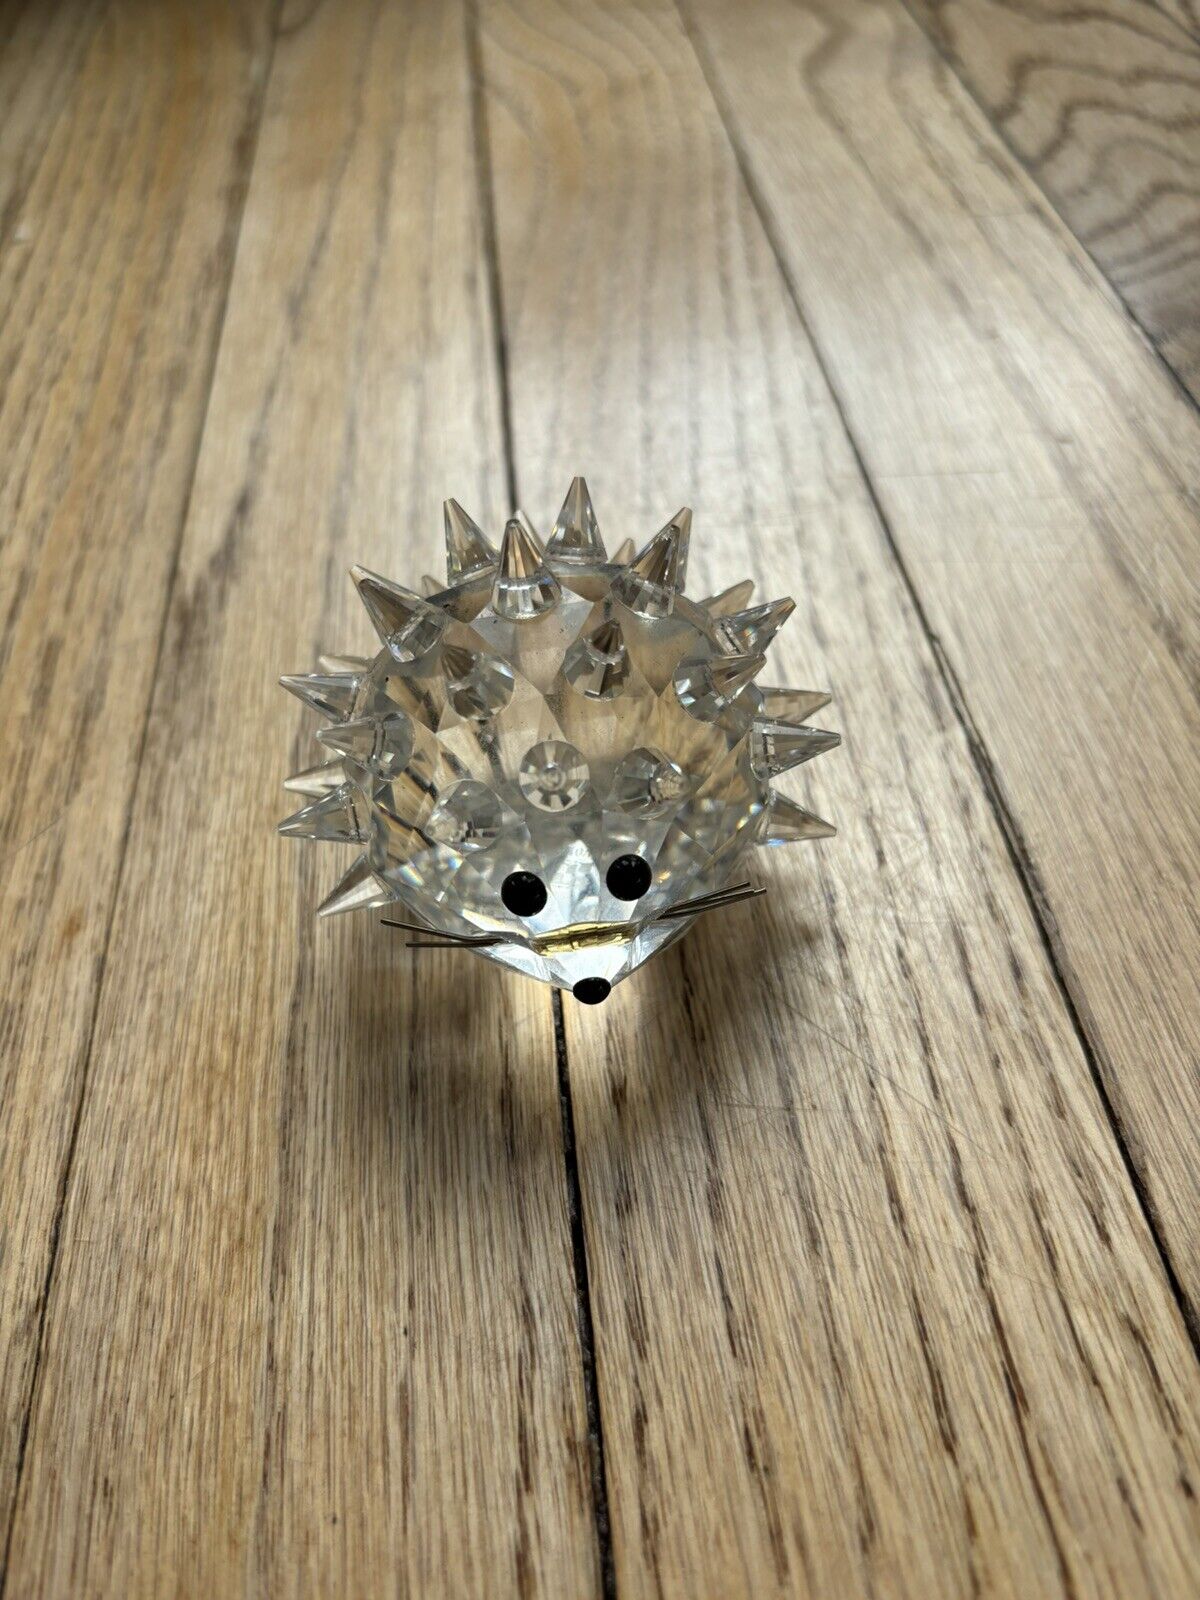 Swarovski Crystal In A Summer Meadow Clear Cut Crystal Glass Hedgehog Figurine